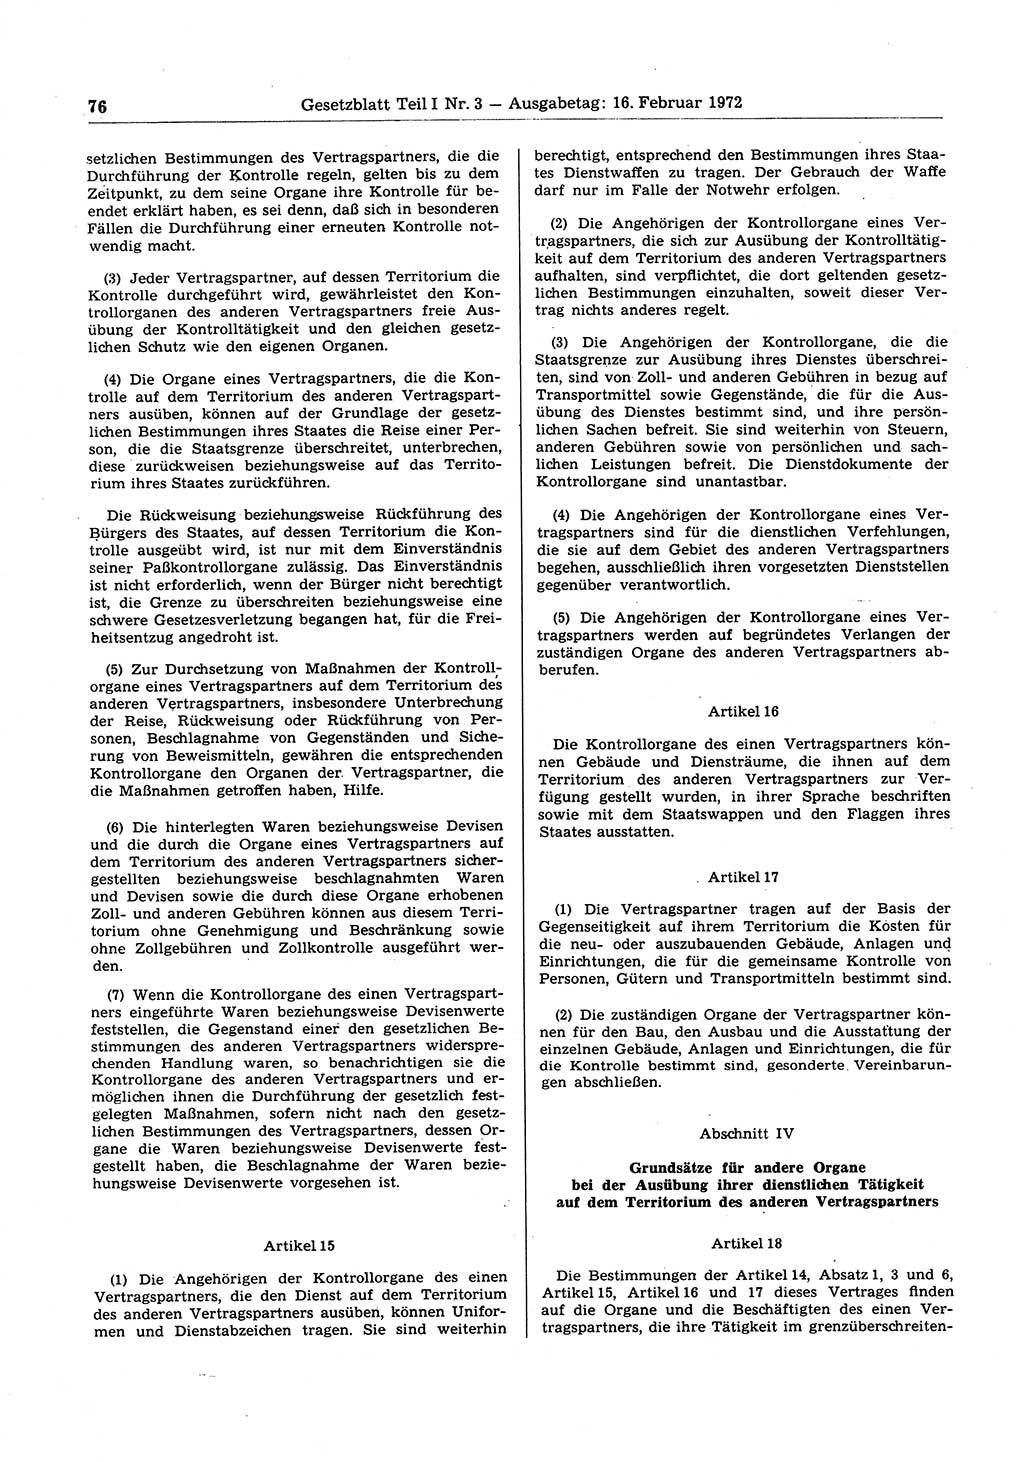 Gesetzblatt (GBl.) der Deutschen Demokratischen Republik (DDR) Teil Ⅰ 1972, Seite 76 (GBl. DDR Ⅰ 1972, S. 76)